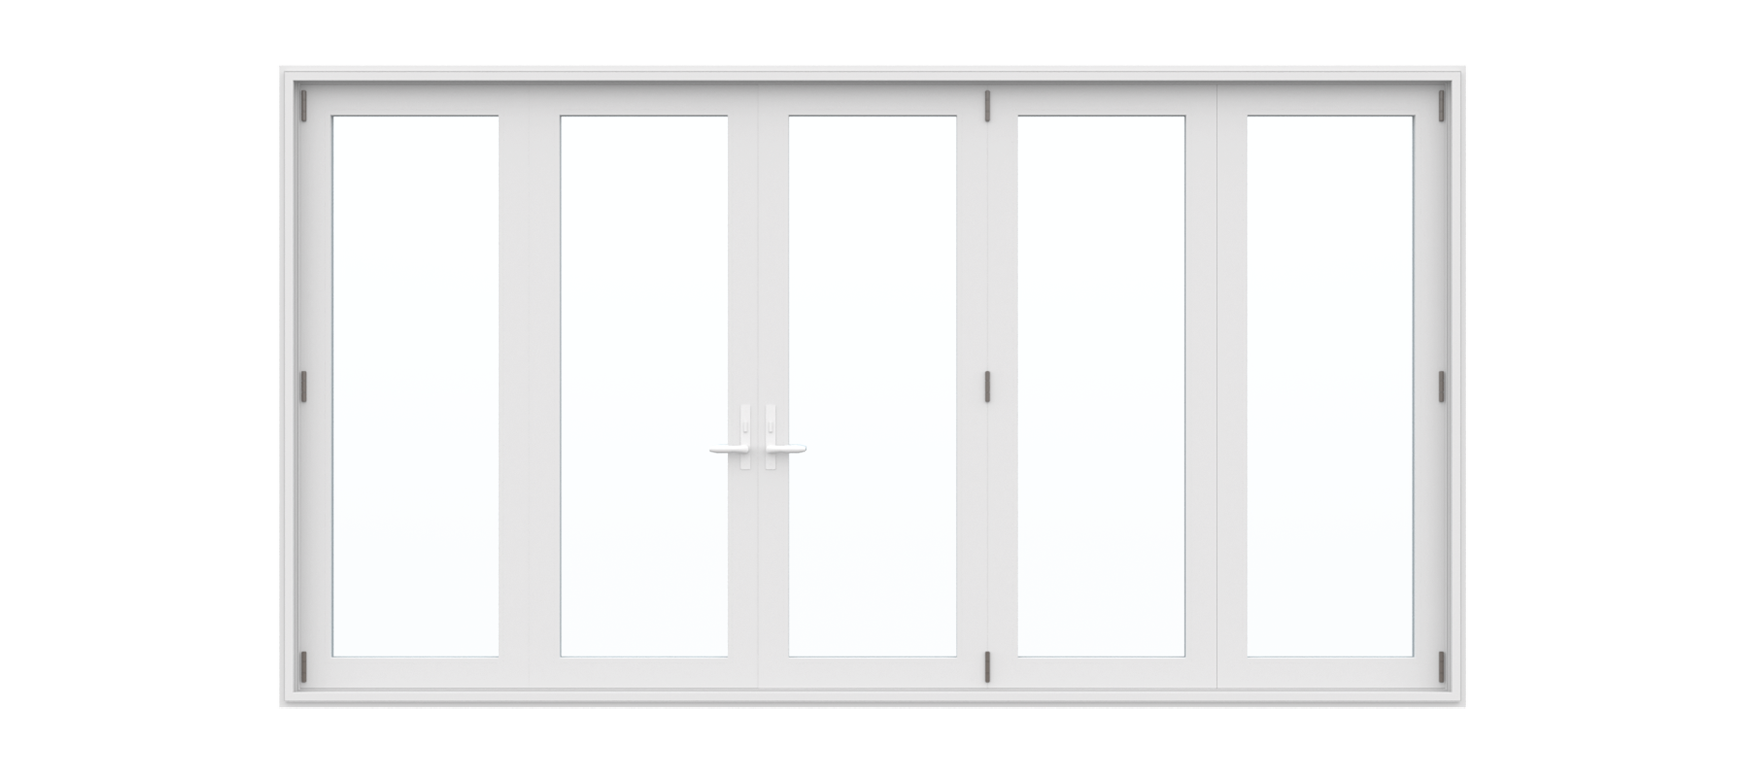 5 Panel Folding Door